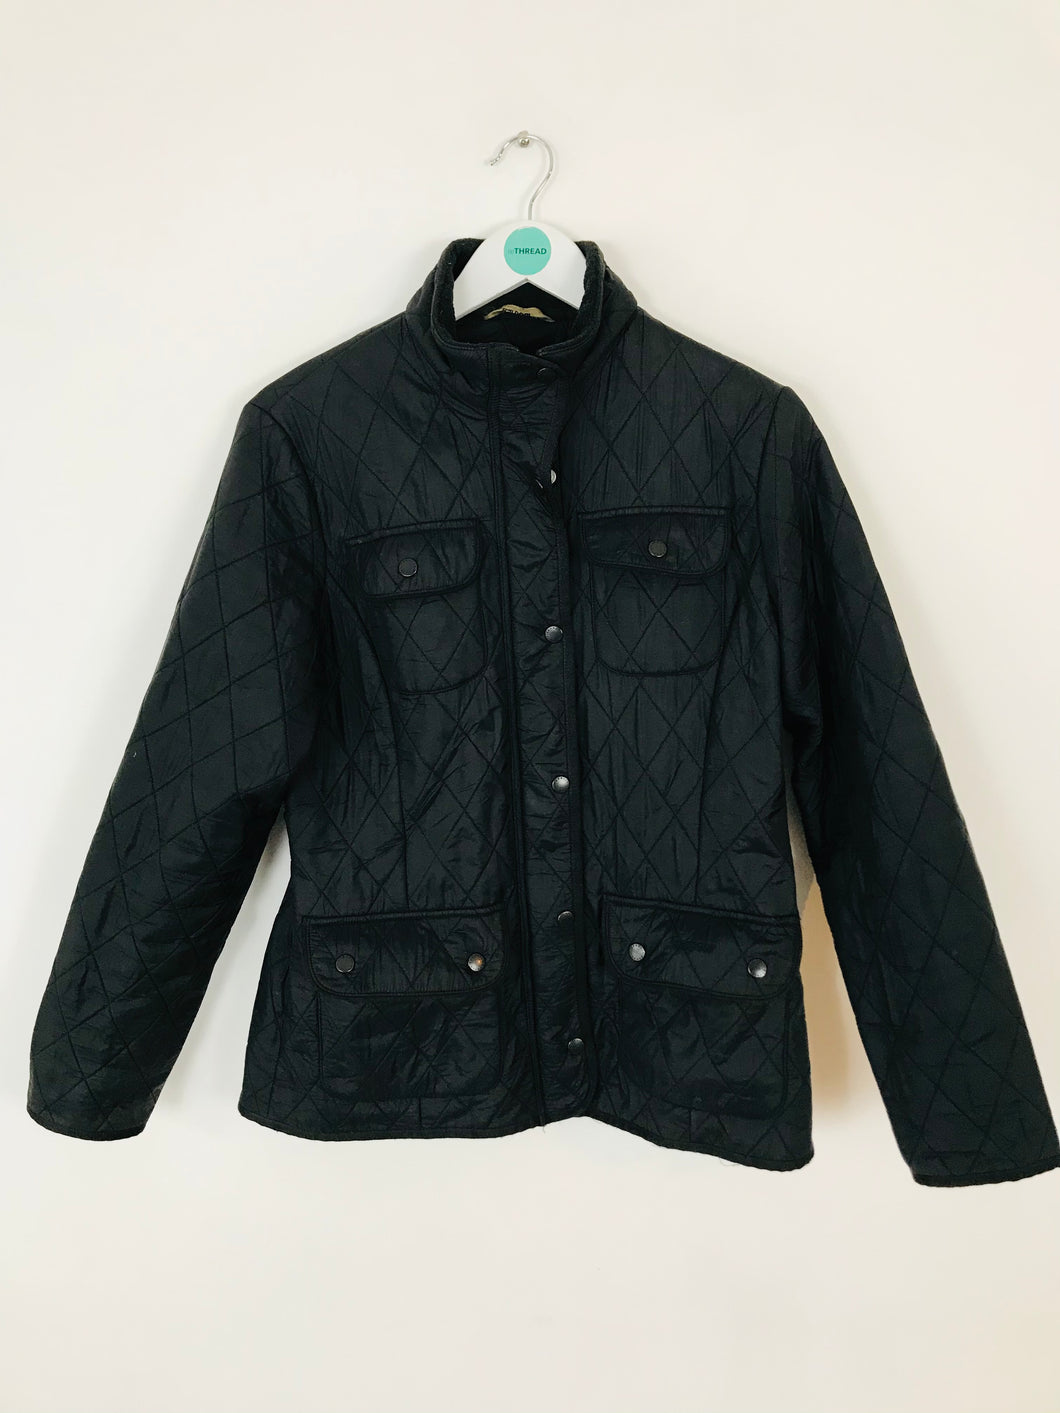 Barbour Women’s Quilted Jacket Coat | UK12 | Black